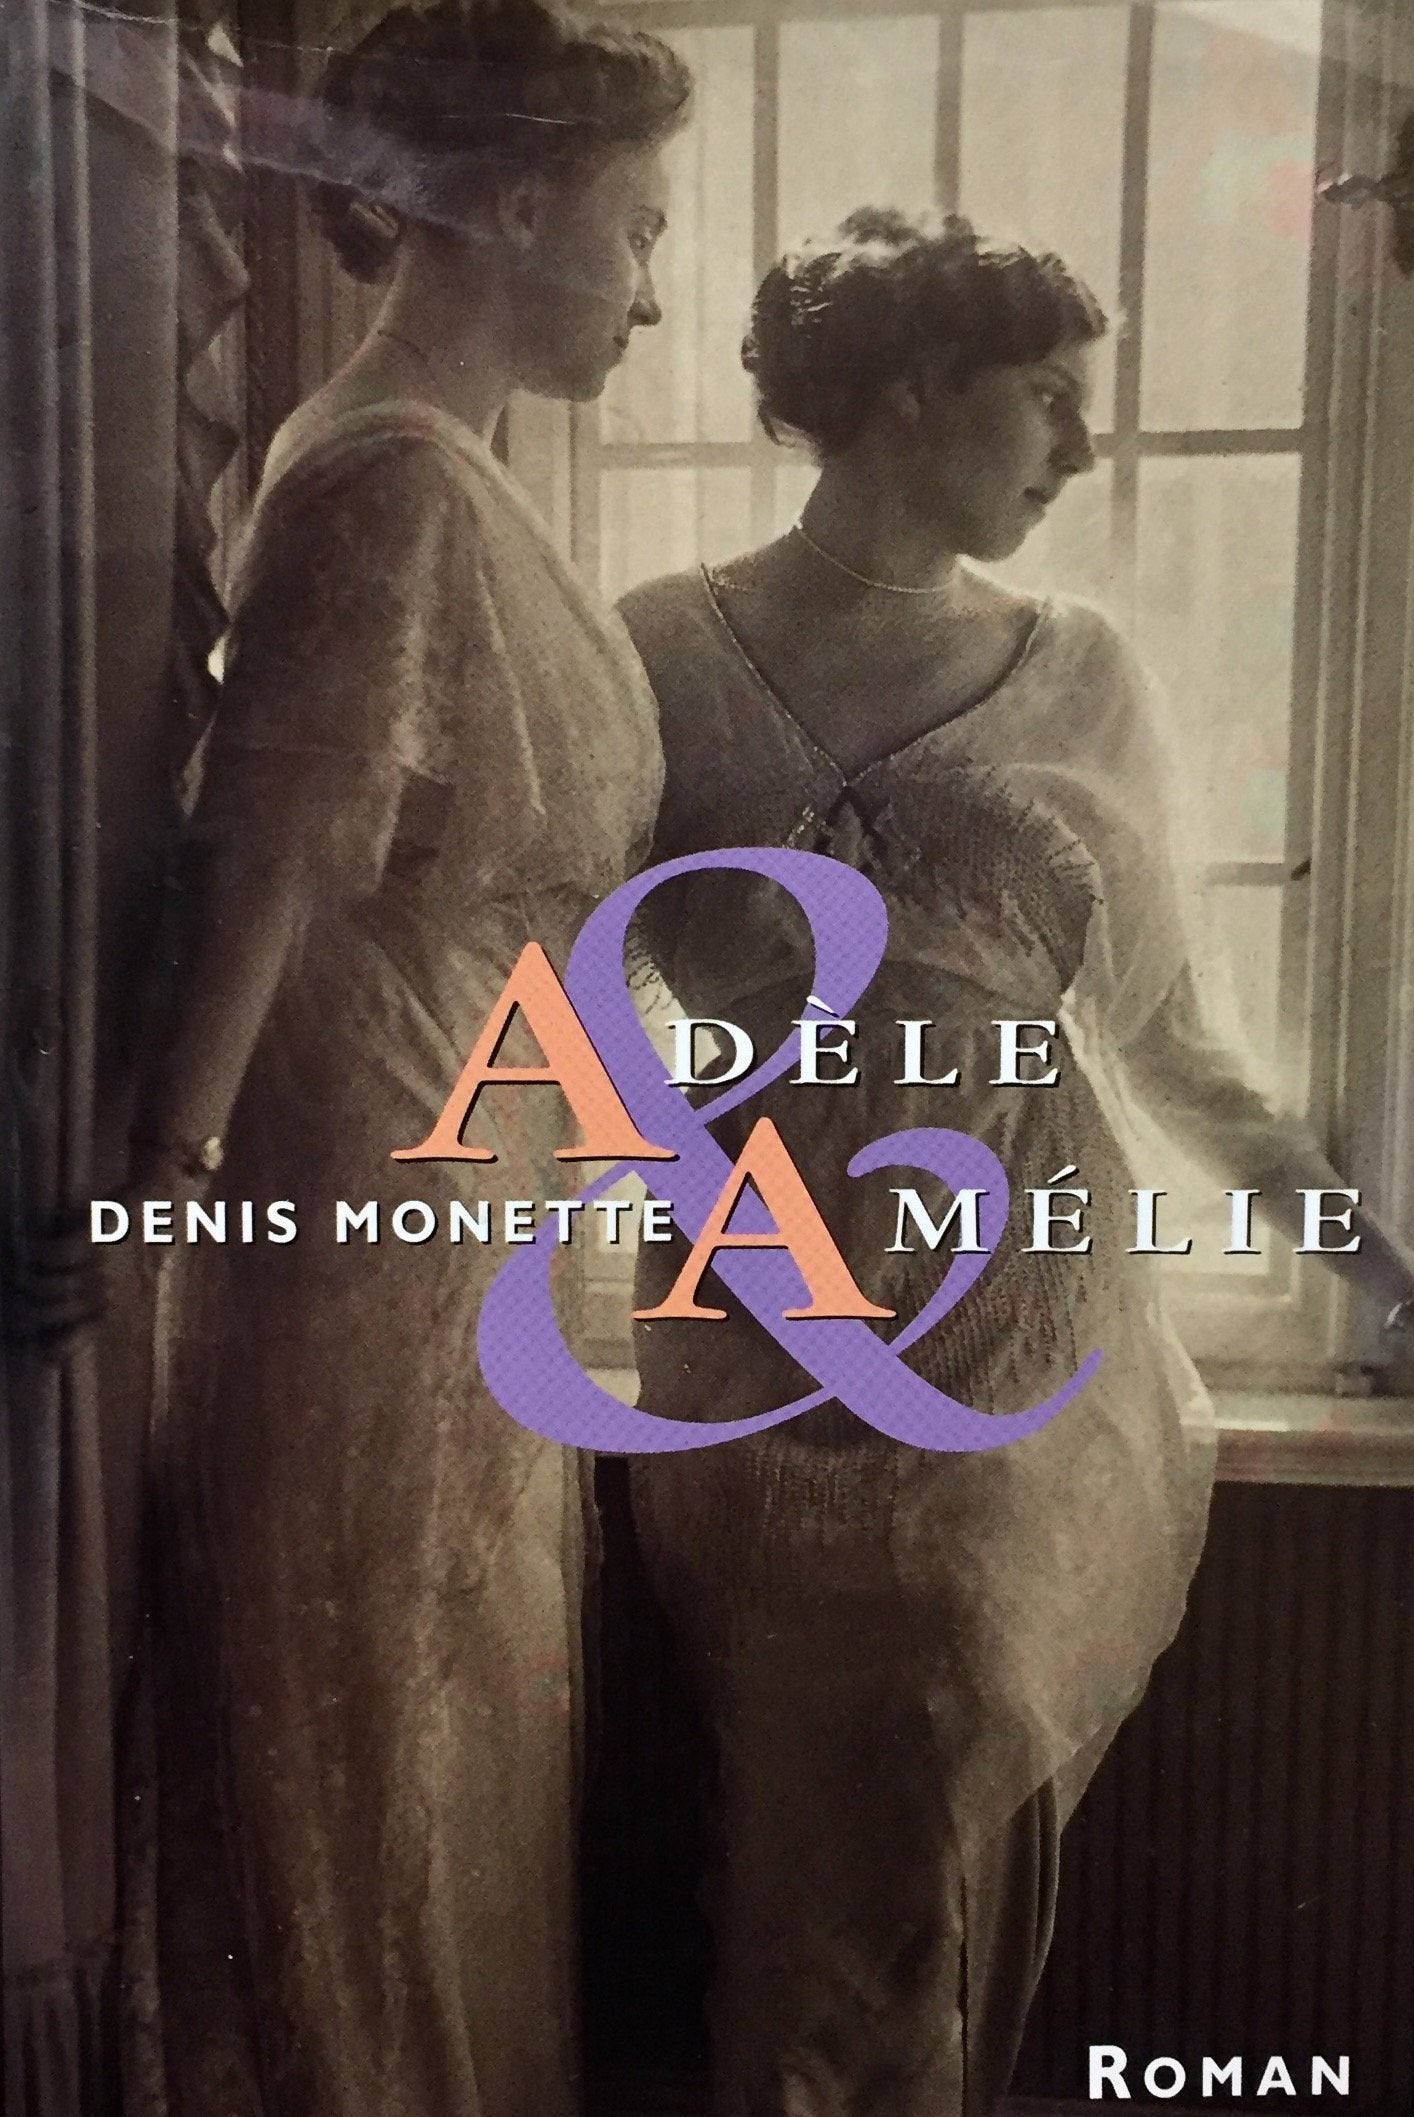 Livre ISBN 2894304021 Adèle & Amélie (Denis Monette)